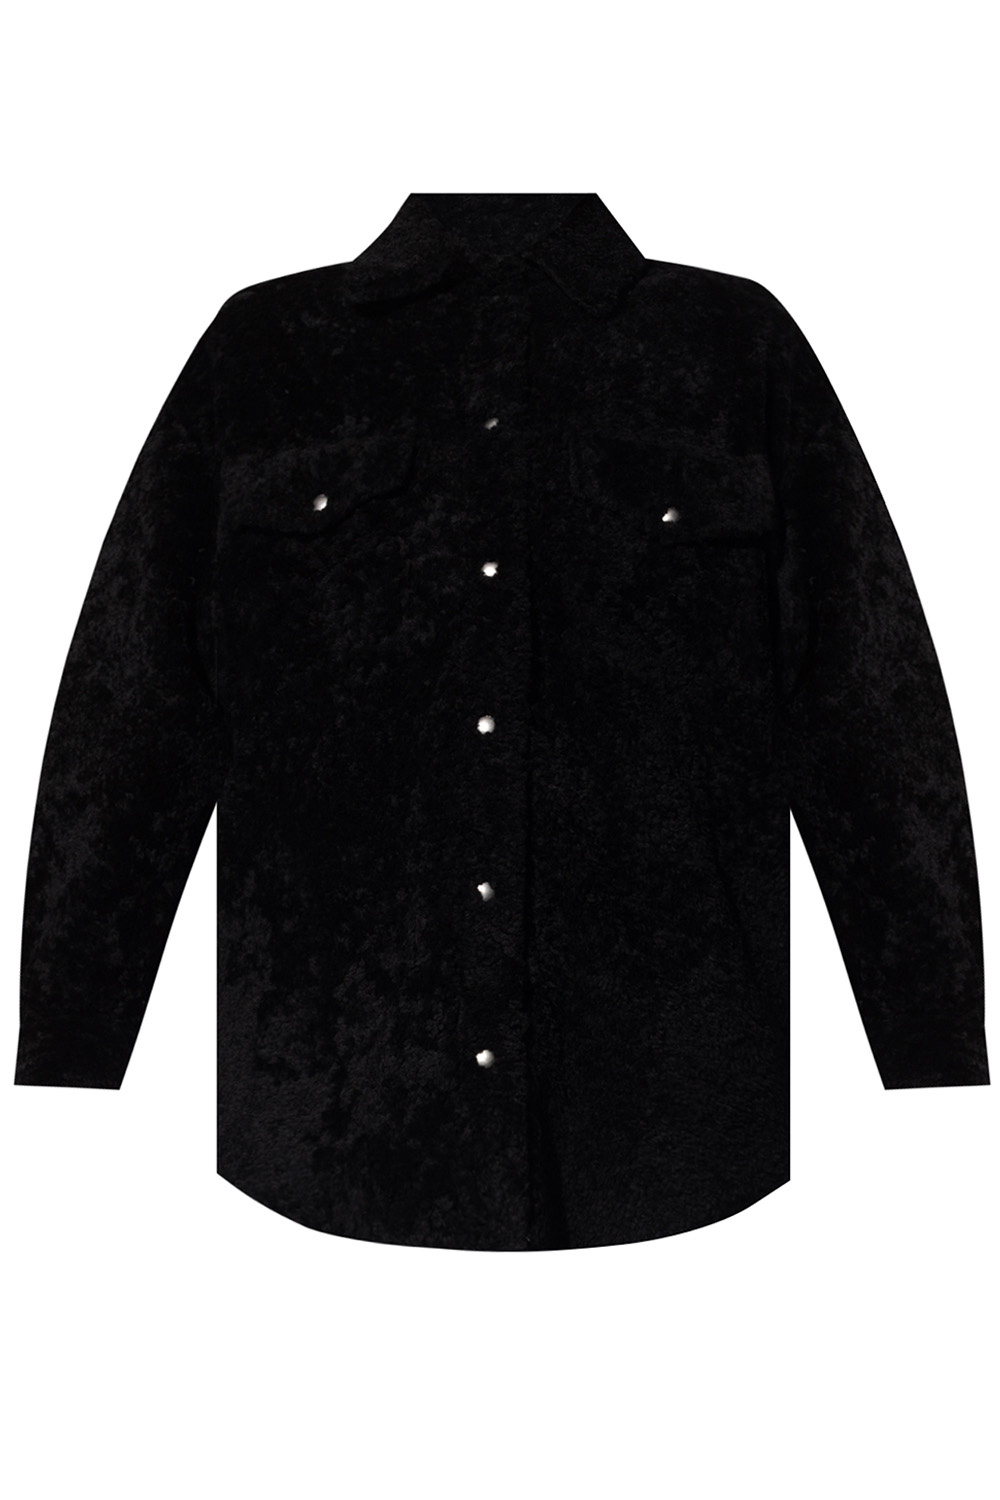 Iro Leather jacket | Women's Clothing | Vitkac